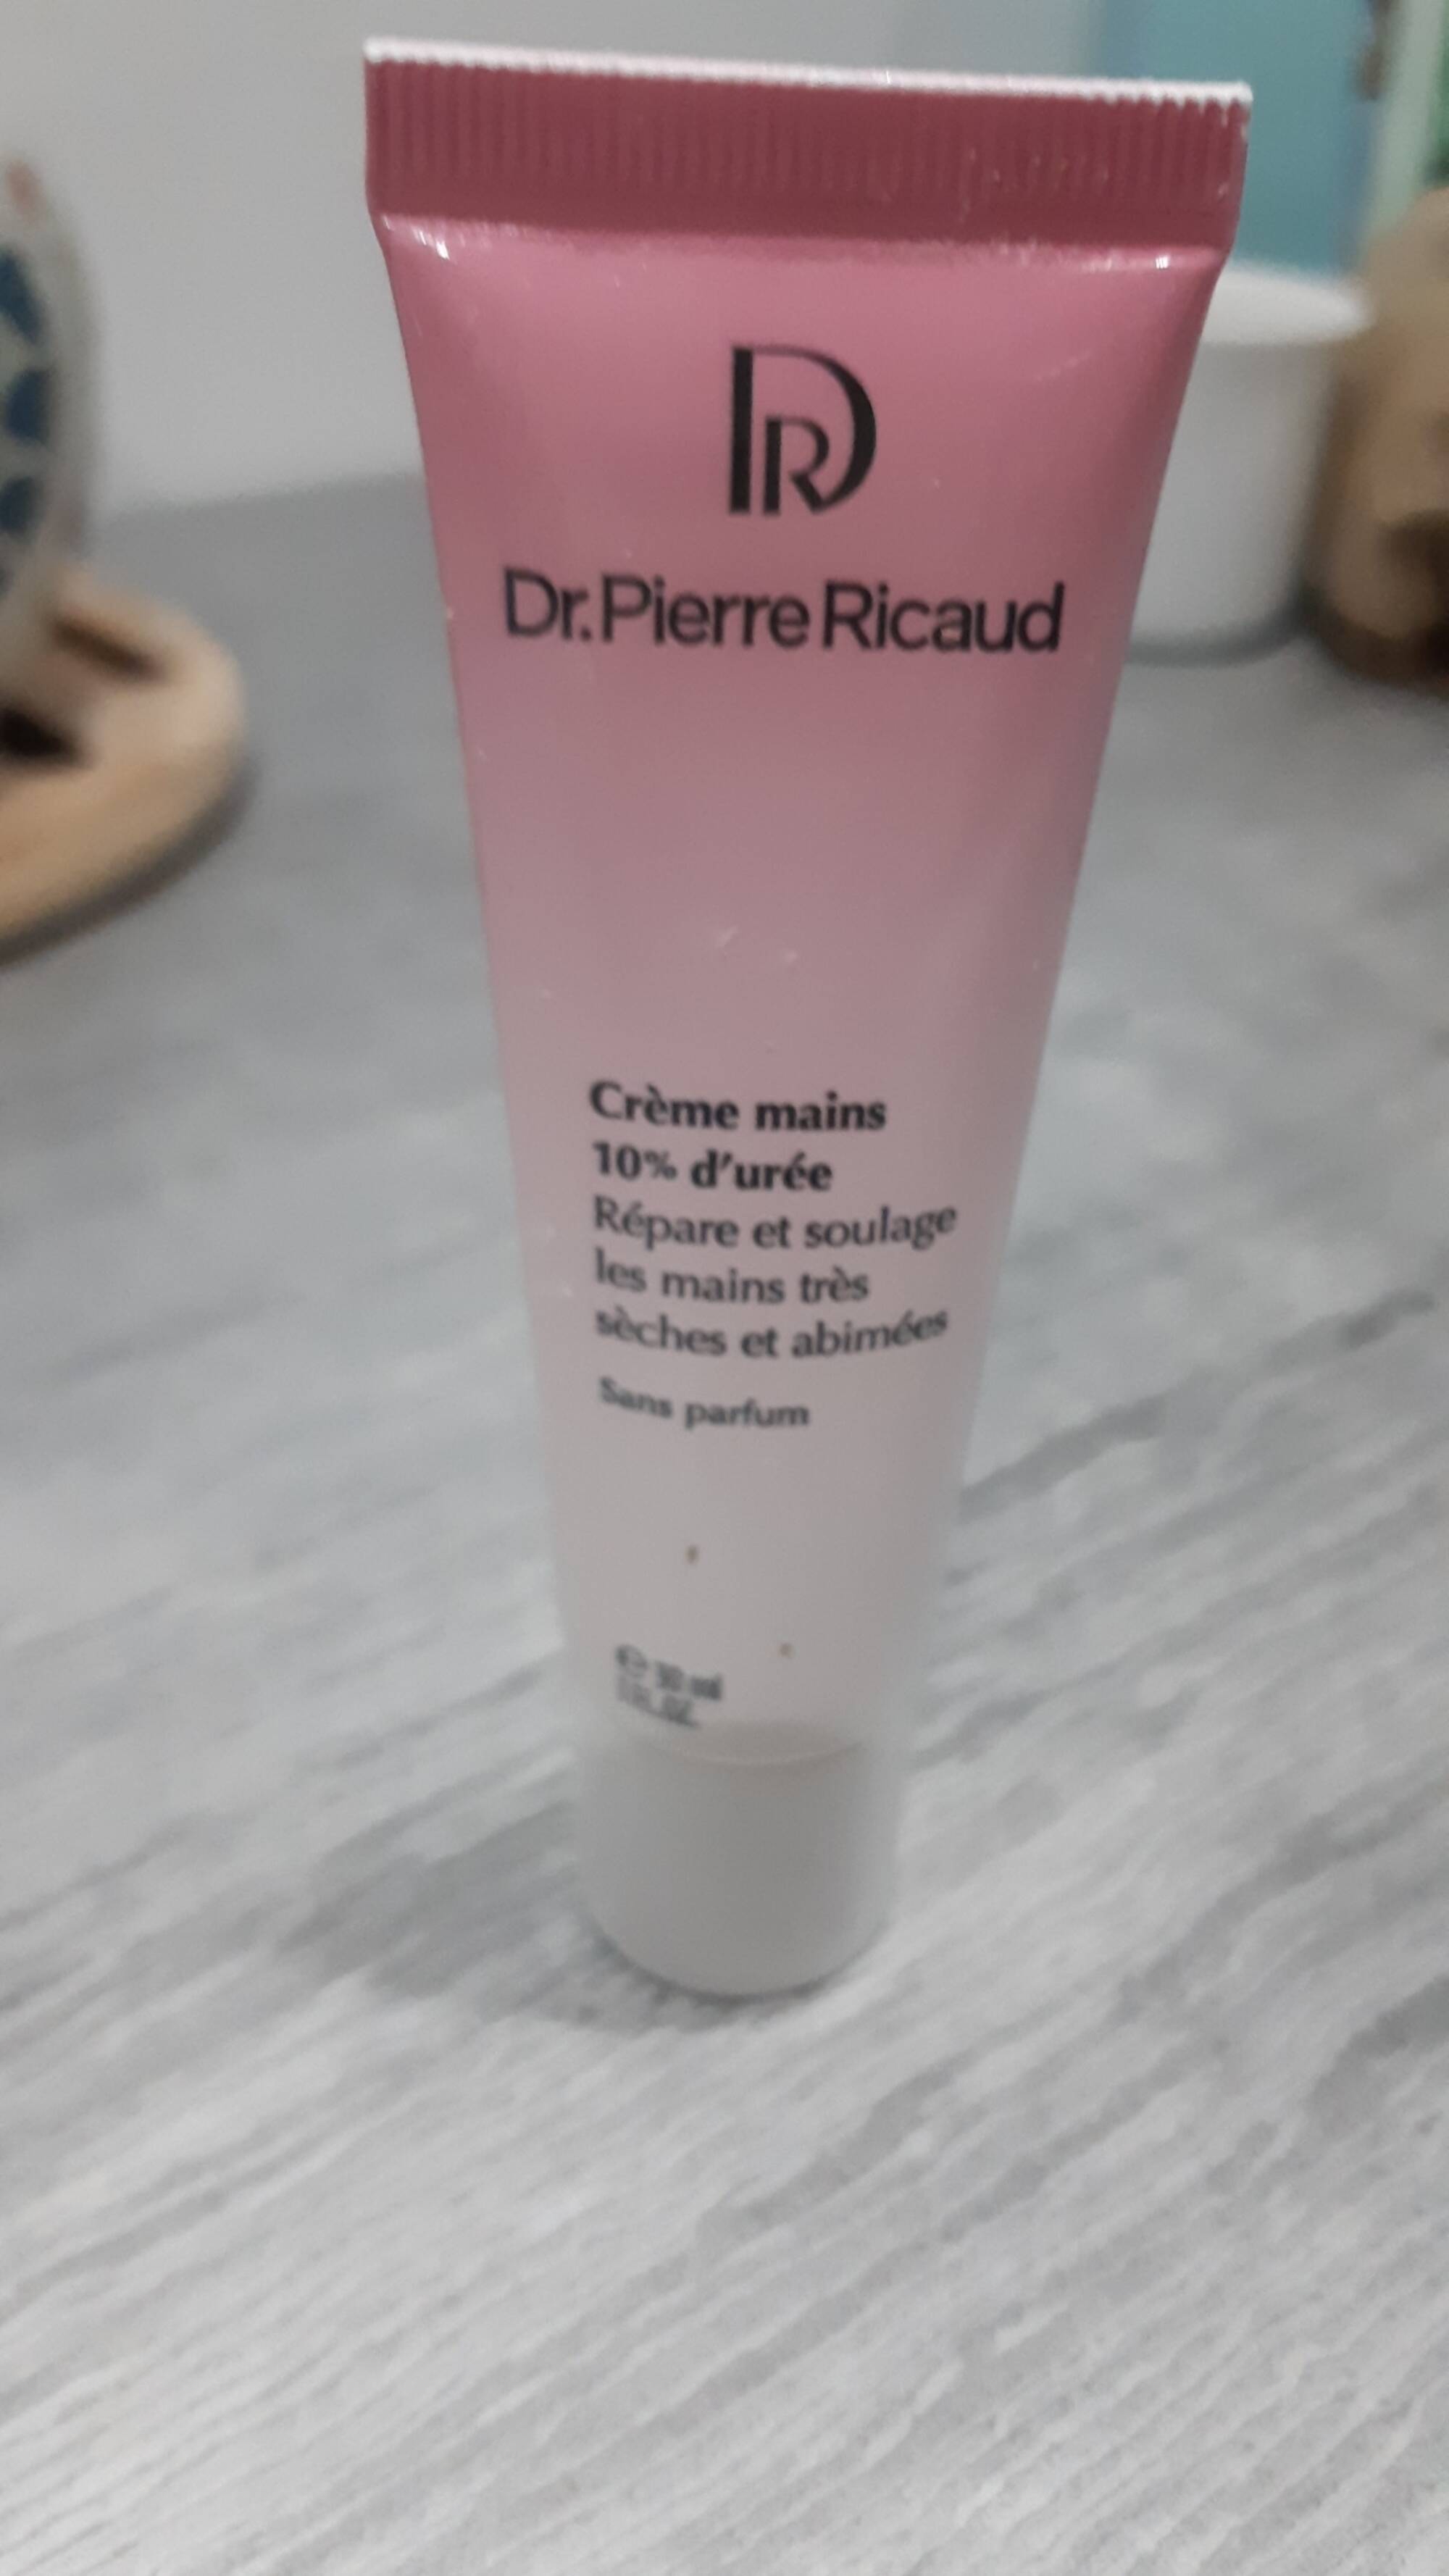 DR PIERRE RICAUD - Crème mains 10% d'urée